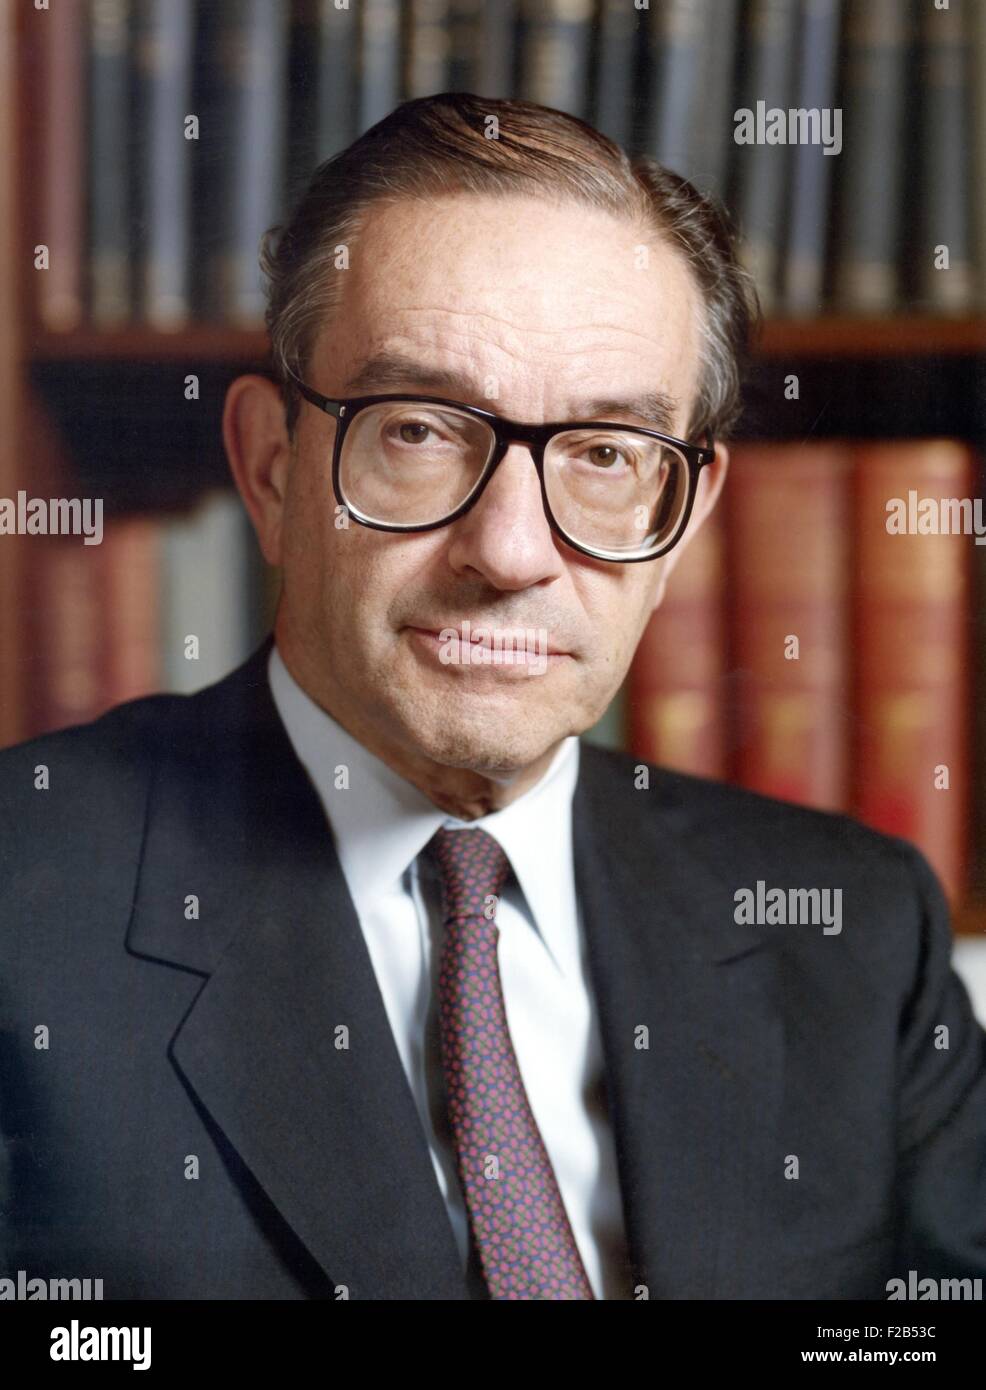 Alan Greenspan fue Presidente de la Reserva Federal de los EE.UU. de 1987 a 2006. Mientras fue presidente durante un período de excepción el crecimiento económico, su política de relajación monetaria contribuyó a la crisis de las hipotecas de alto riesgo, que provocó el 2008 la Bolsa plunge y la siguiente recesión. - (BSLOC 2015 1 106). Foto de stock